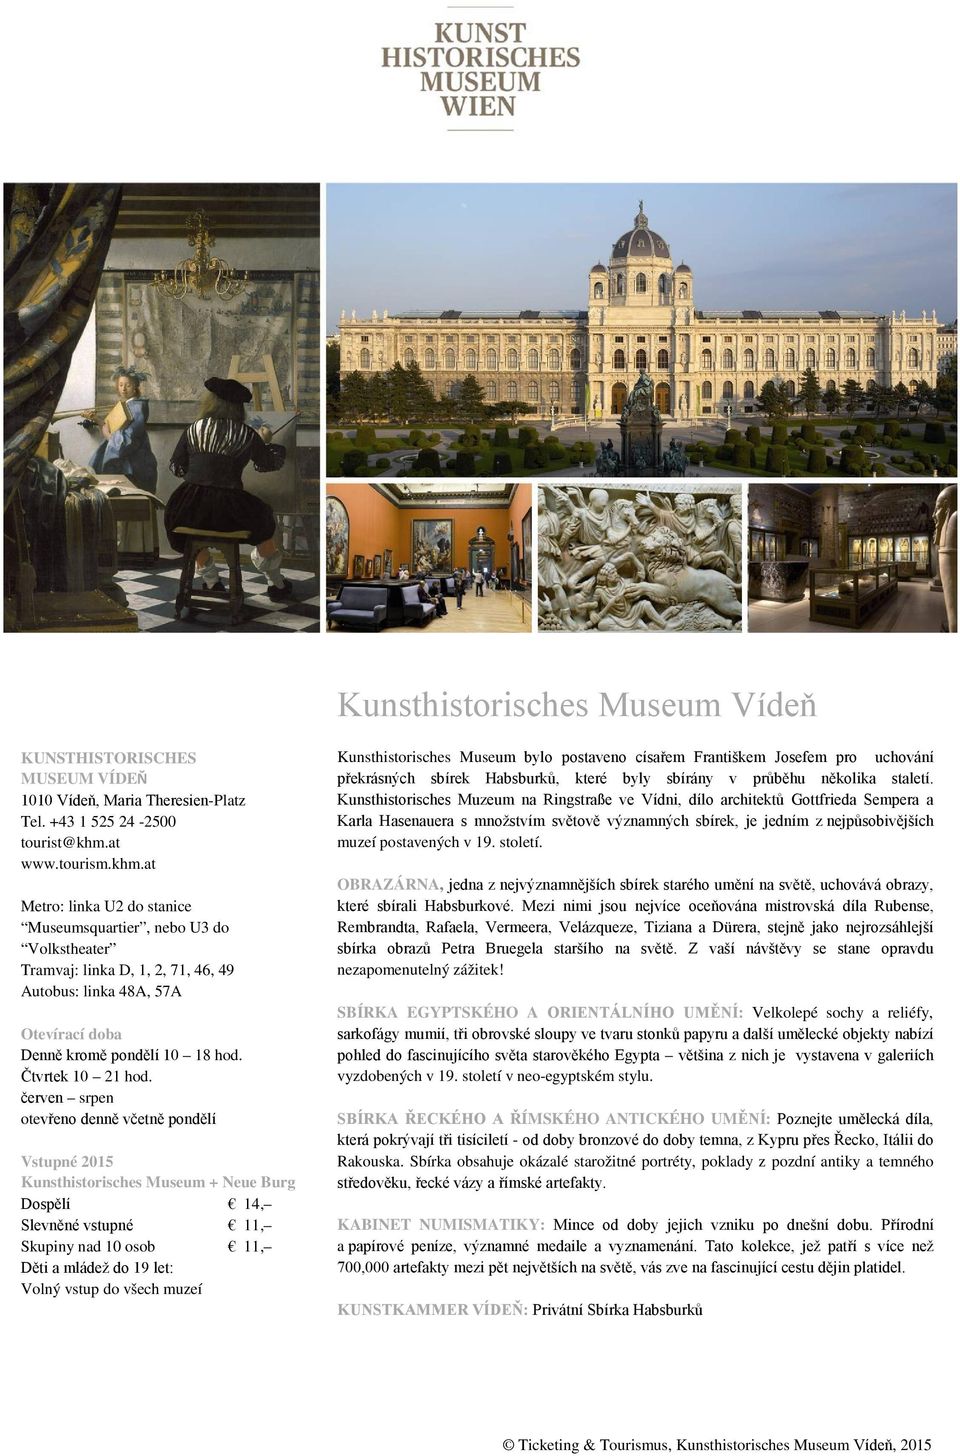 červen srpen otevřeno denně včetně pondělí Kunsthistorisches Museum + Neue Burg Dospělí 14, Slevněné vstupné 11, Skupiny nad 10 osob 11, Kunsthistorisches Museum bylo postaveno císařem Františkem